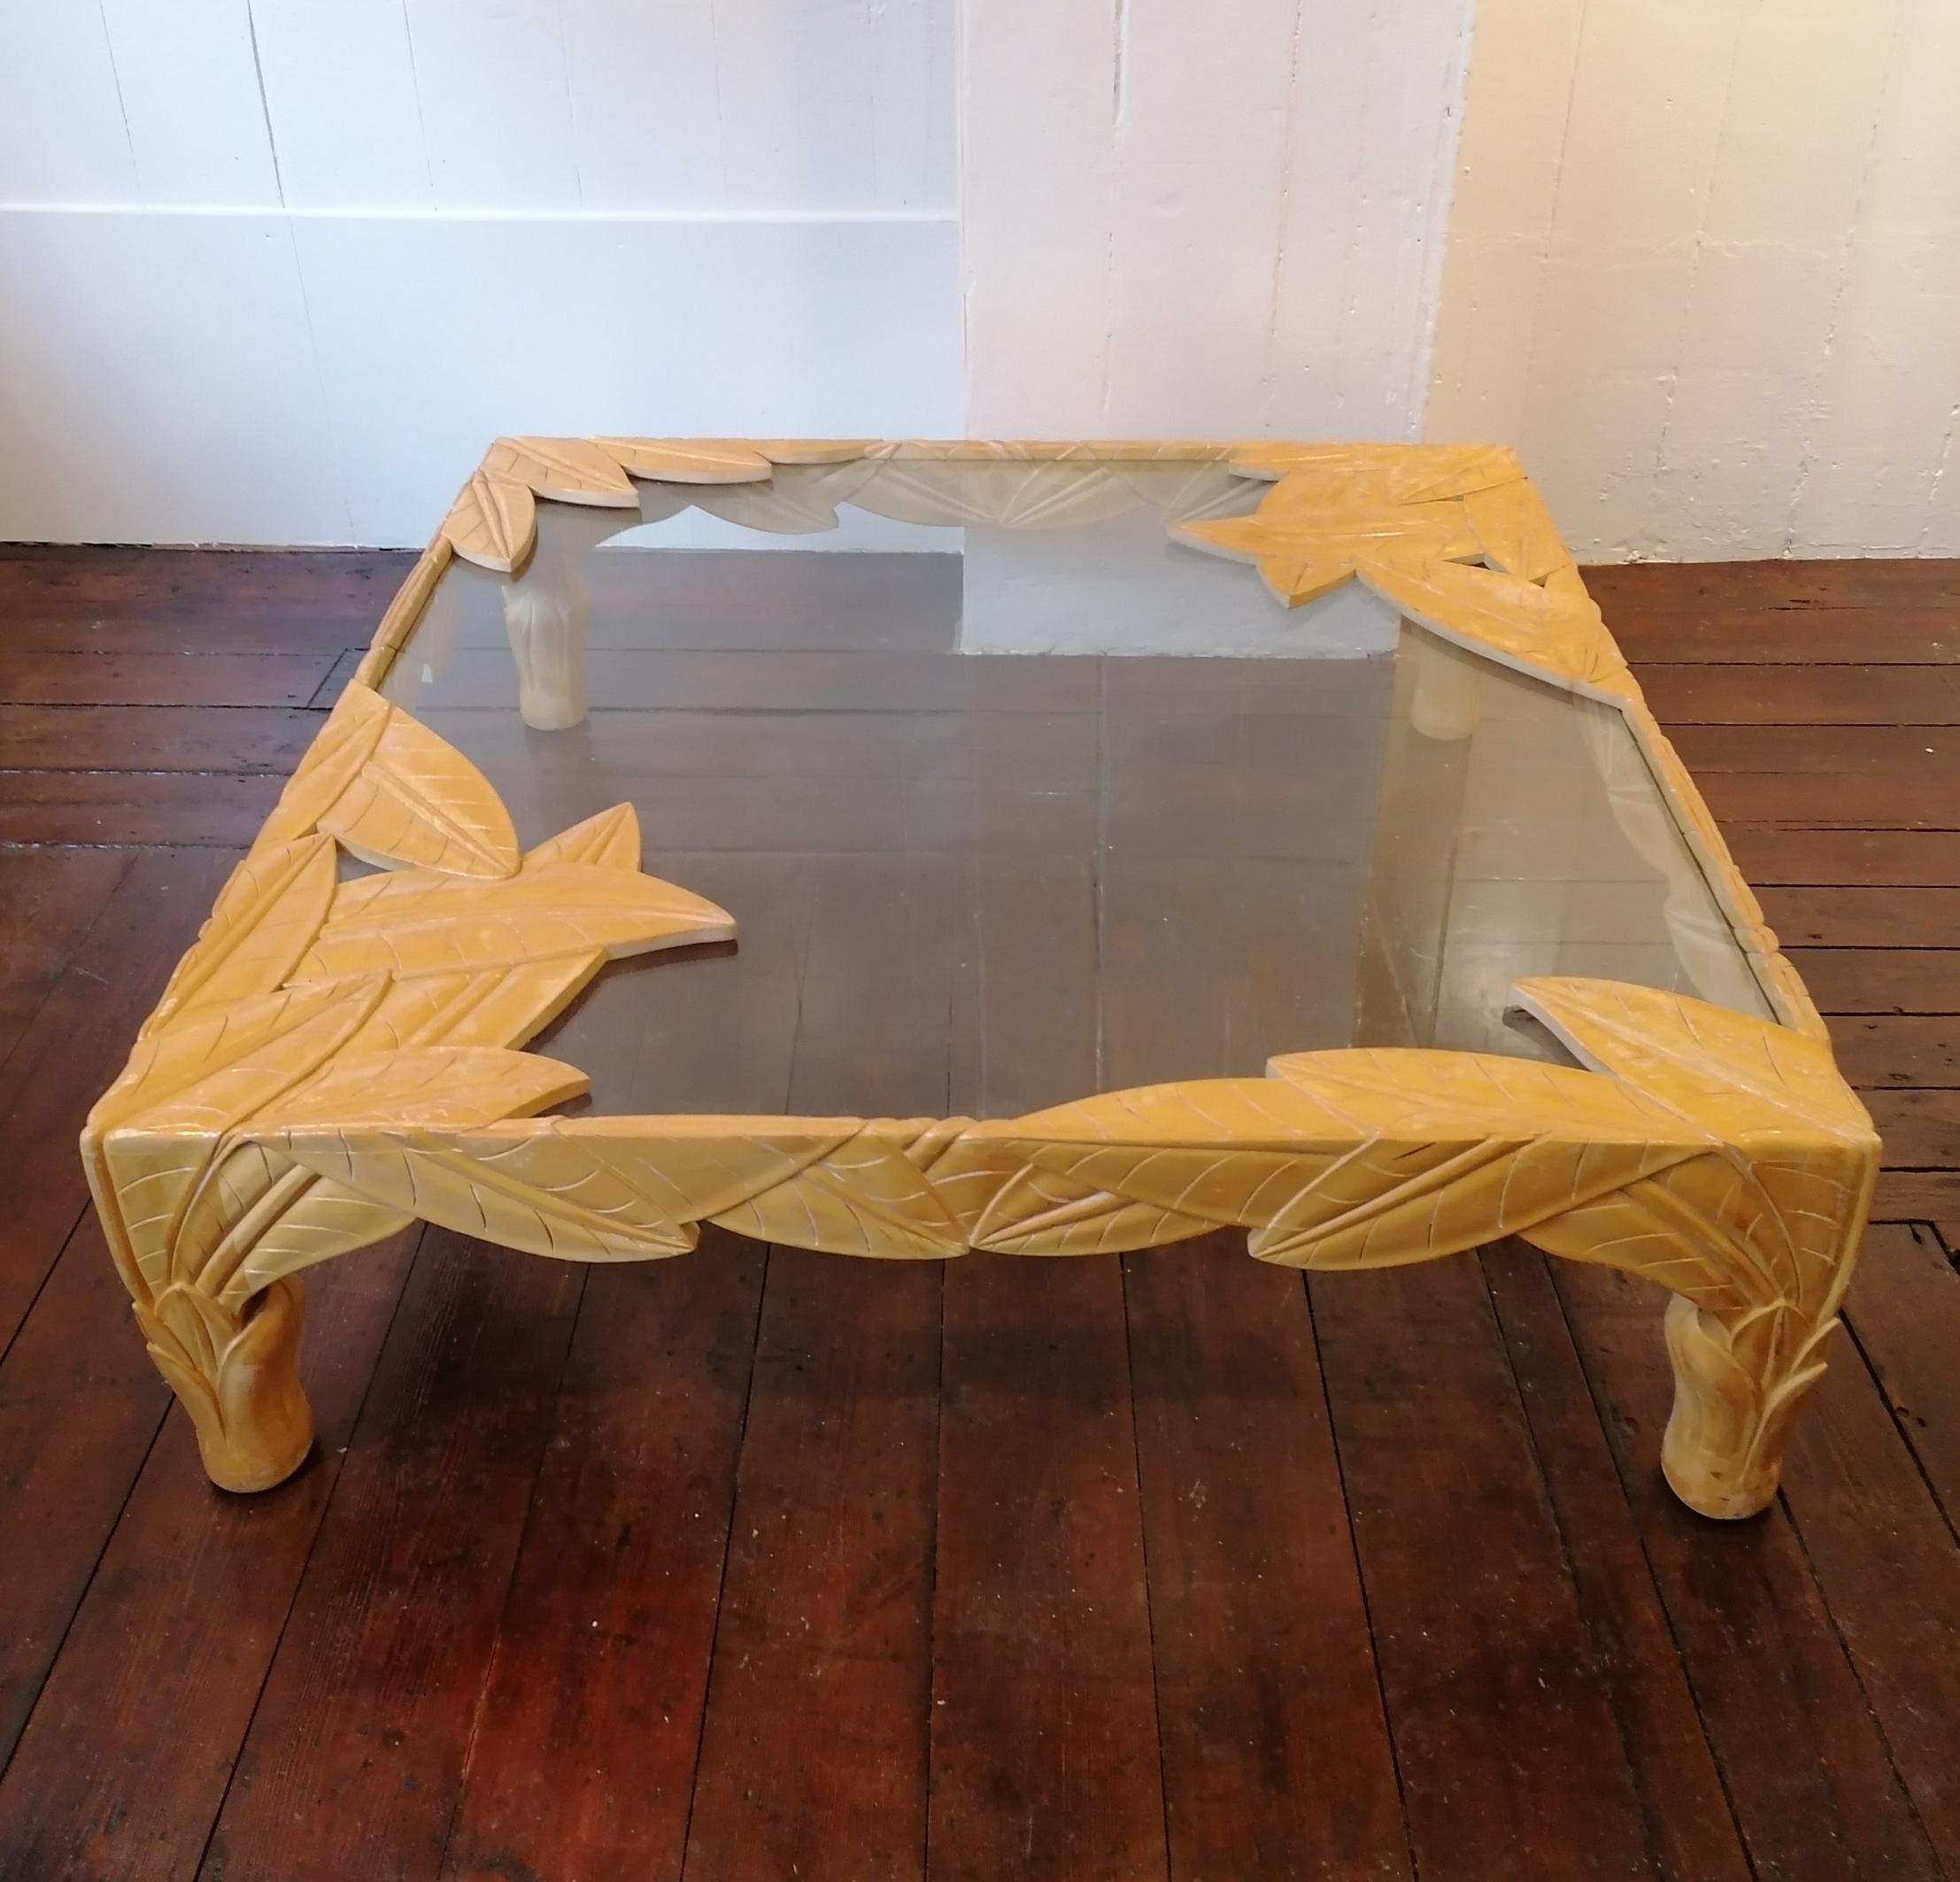 Énorme et spectaculaire table basse en bois sculpté avec plateau en verre trempé, États-Unis, années 1980. Il n'y a pas de Label du fabricant, c'est donc un peu un mystère.
Bon état vintage, avec un peu d'usure liée à l'âge, et une véritable pièce